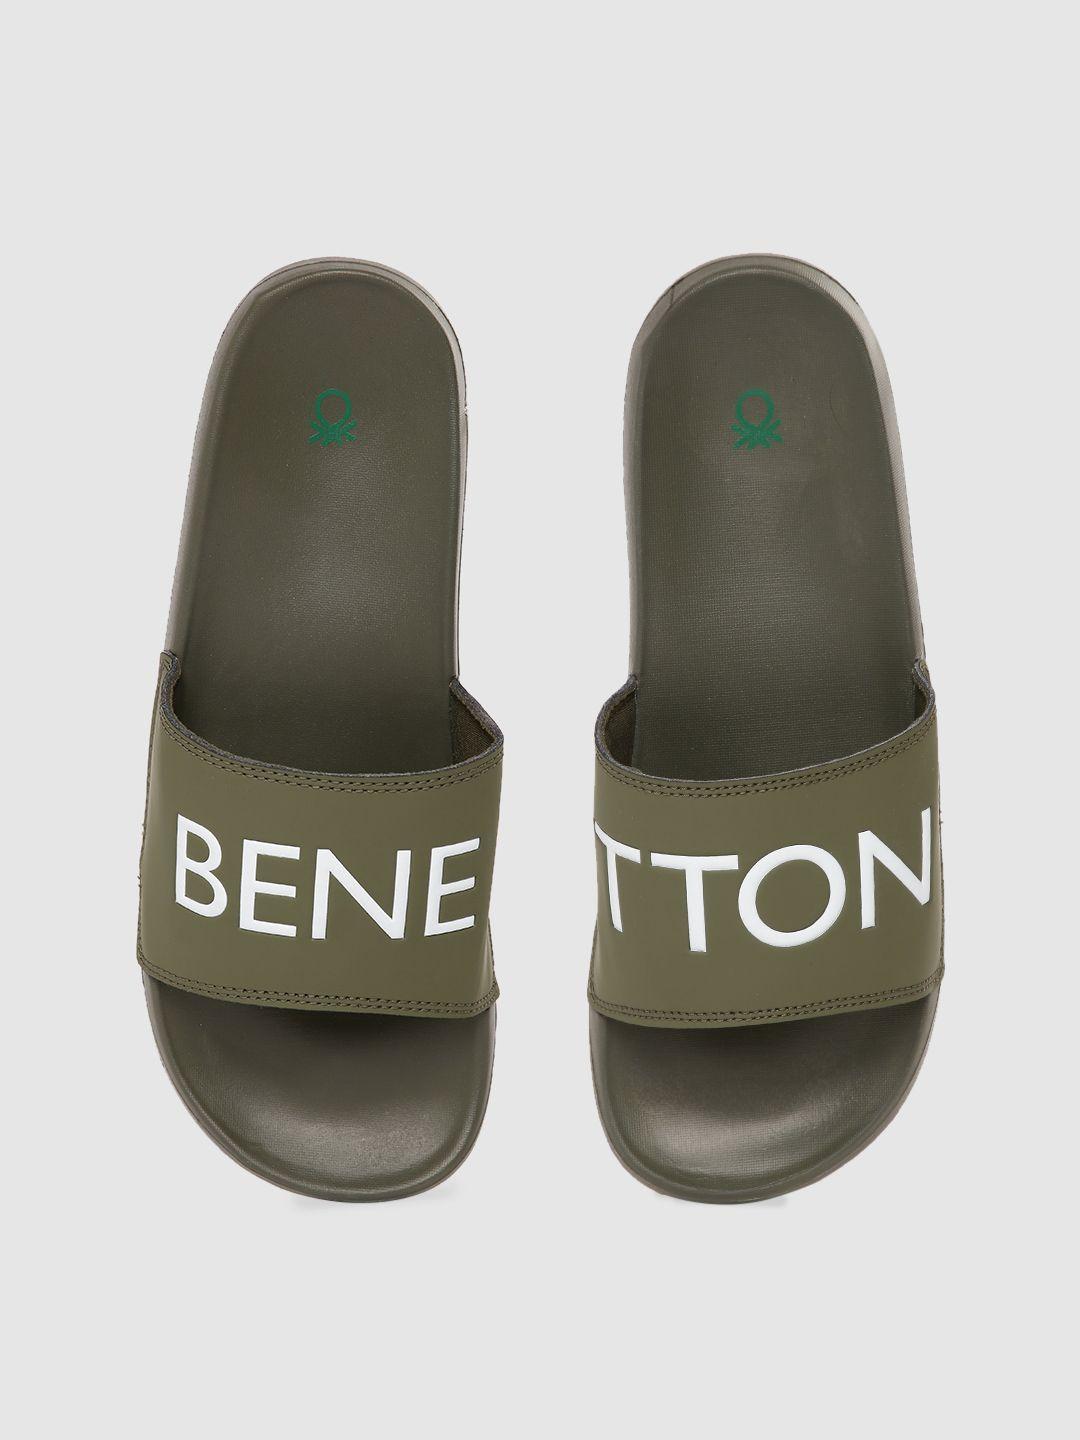 united colors of benetton men olive green & white brand logo print sliders